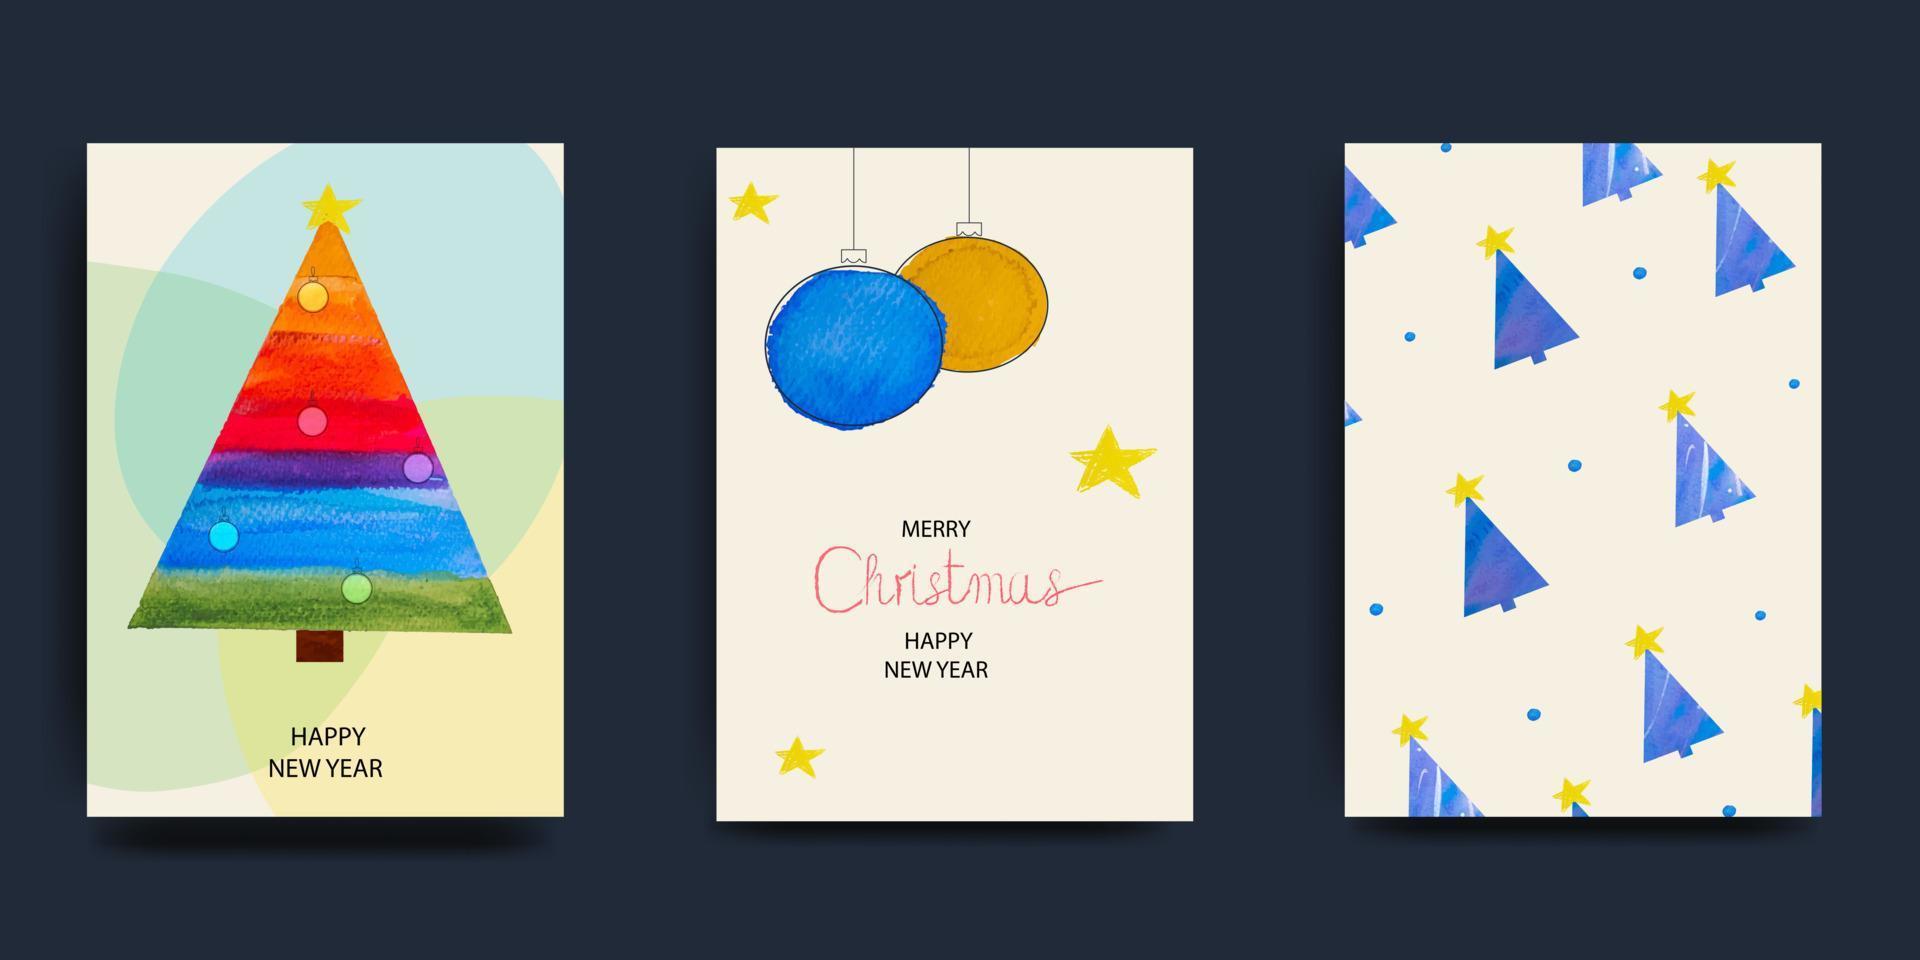 frohe weihnachten und ein frohes neues jahr satz grußkarten, poster, feiertagsumschläge. modernes weihnachtsdesign in den farben blau, grün, rot. weihnachtsbaum, kugeln, geschenke. Vektor